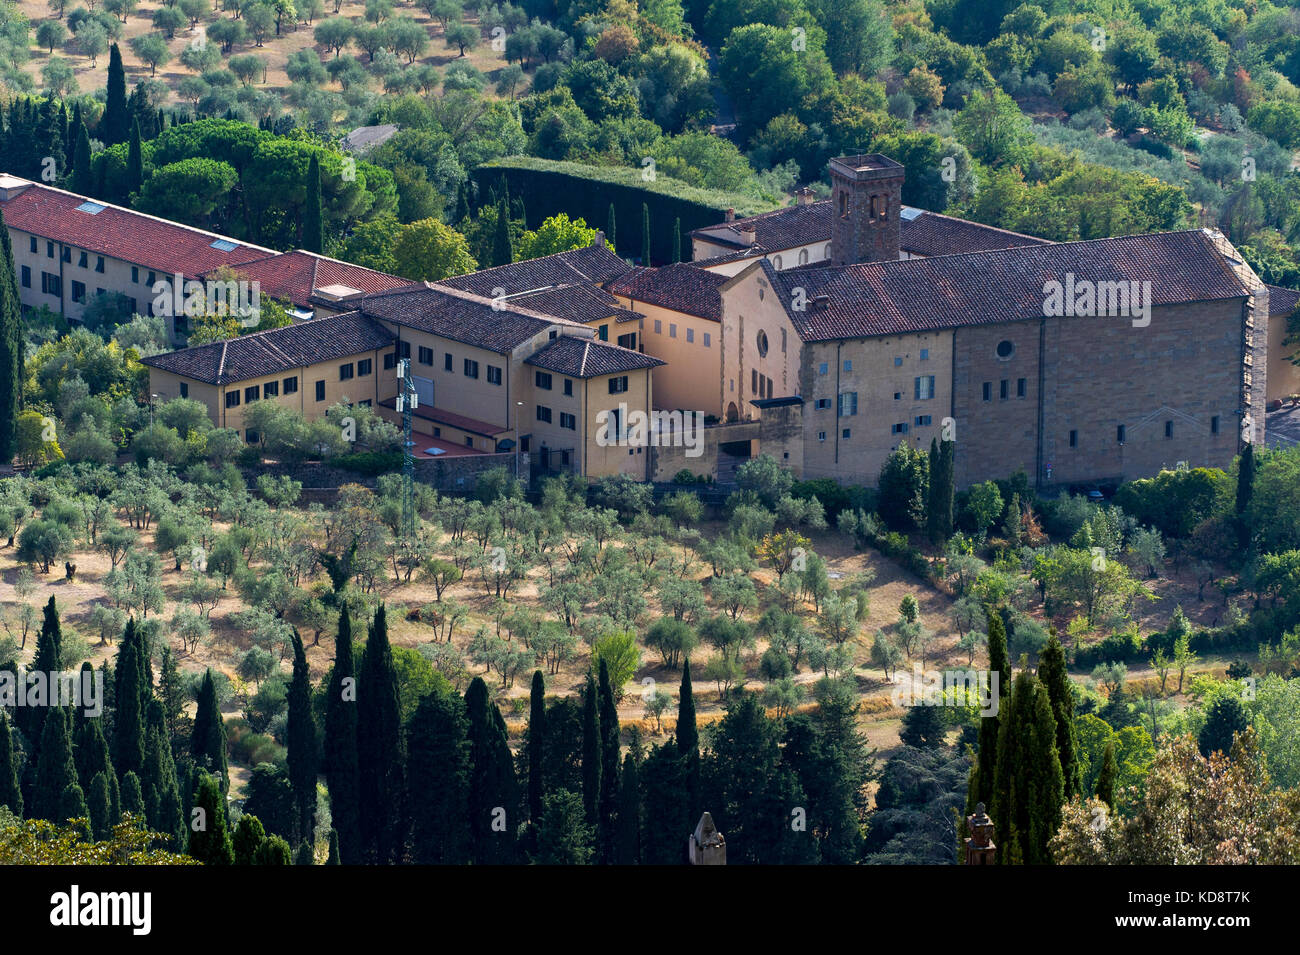 Istituto Universitario Europeo EUI nel vecchio monastero a Fiesole vicino a Firenze, Toscana, Italia, 26 agosto 2017, visto da sopra © Wojciech Foto Stock